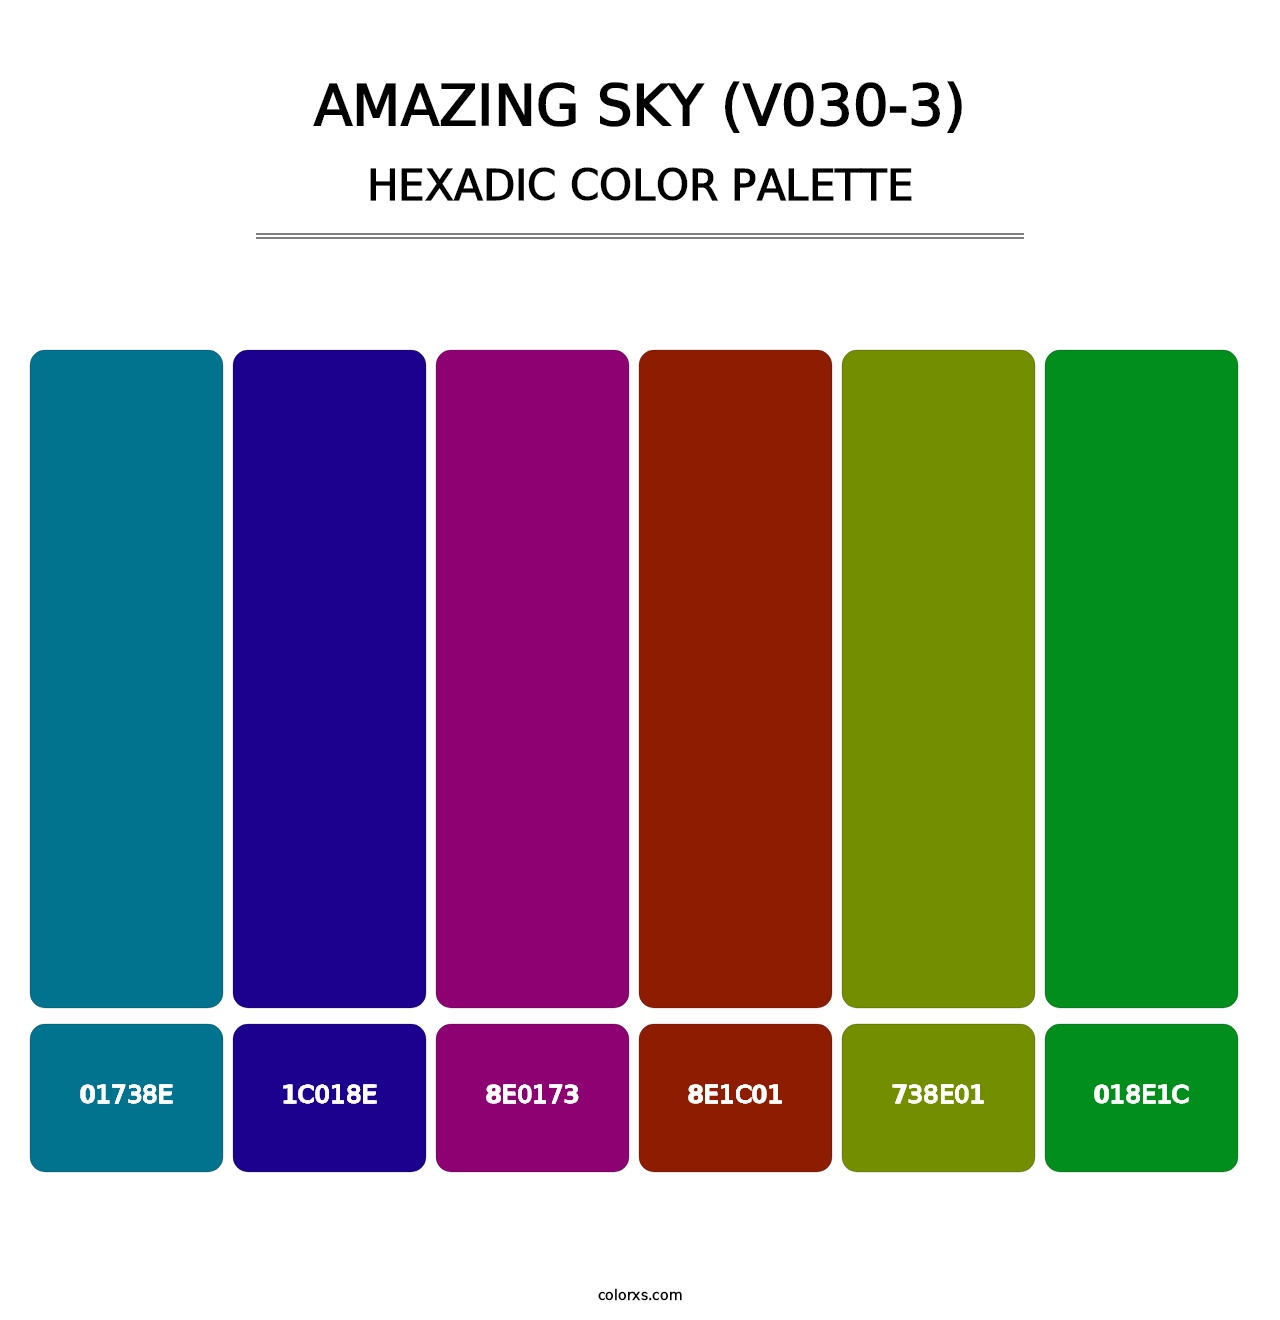 Amazing Sky (V030-3) - Hexadic Color Palette